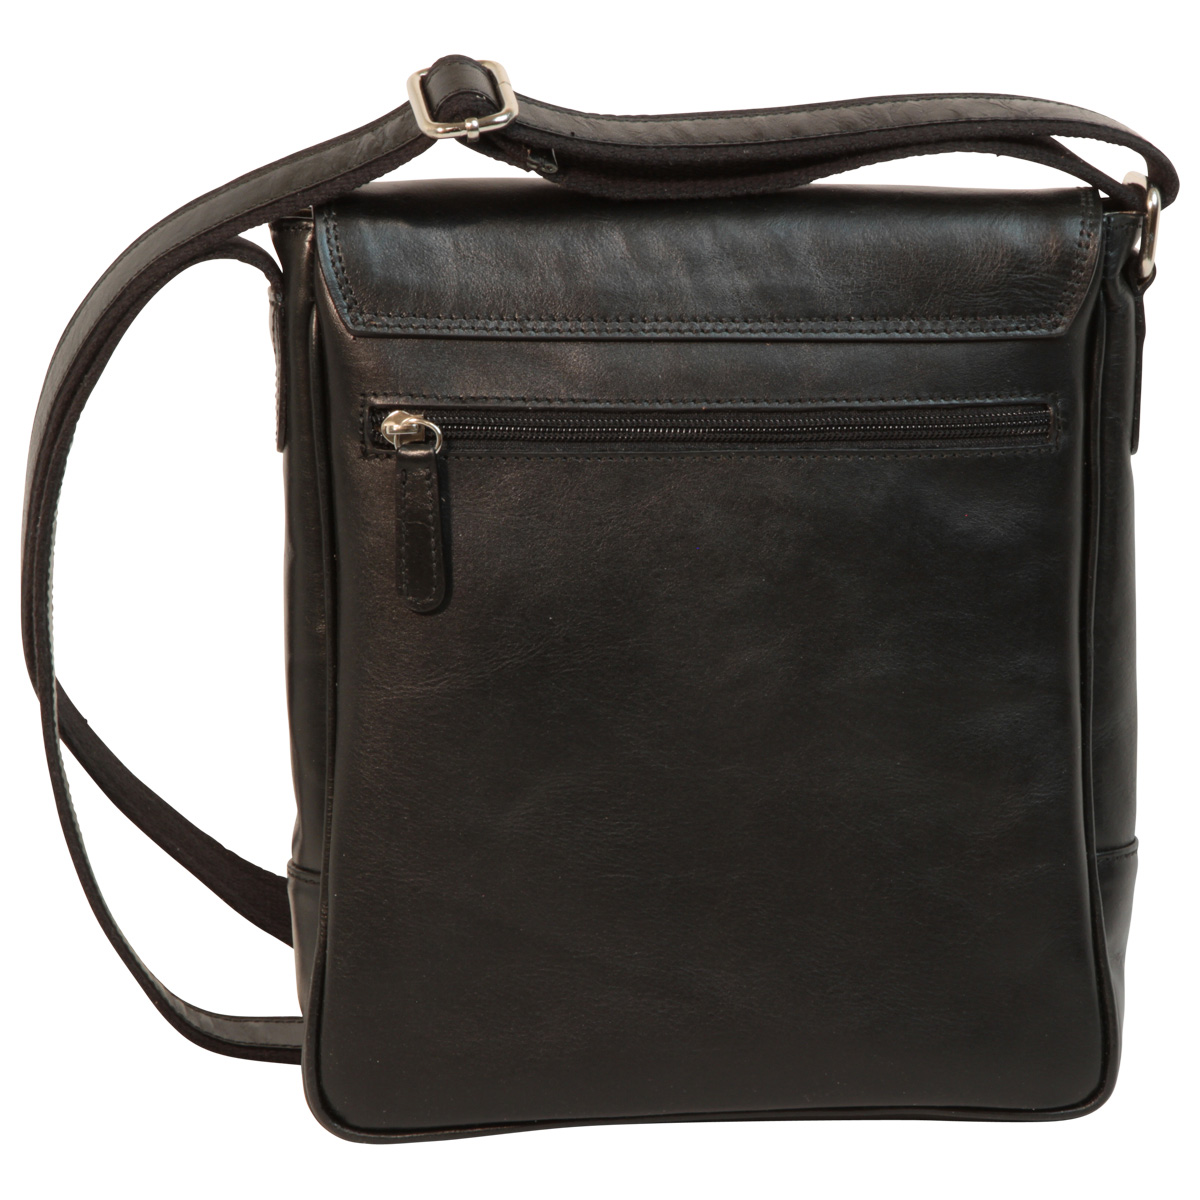 Leather I-Pad bag - Black | 087361NE UK | Old Angler Firenze